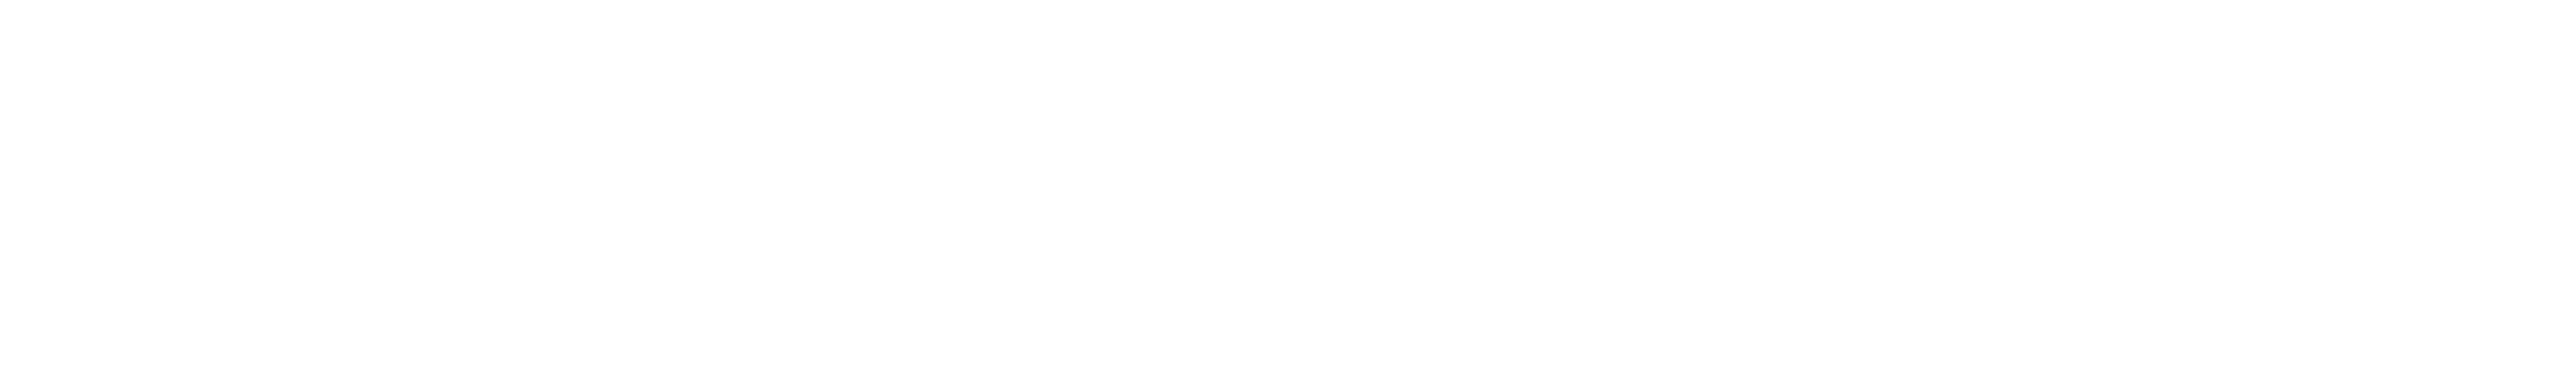 Black and White University of Washington Logo - HCDE Logo Files. Human Centered Design & Engineering